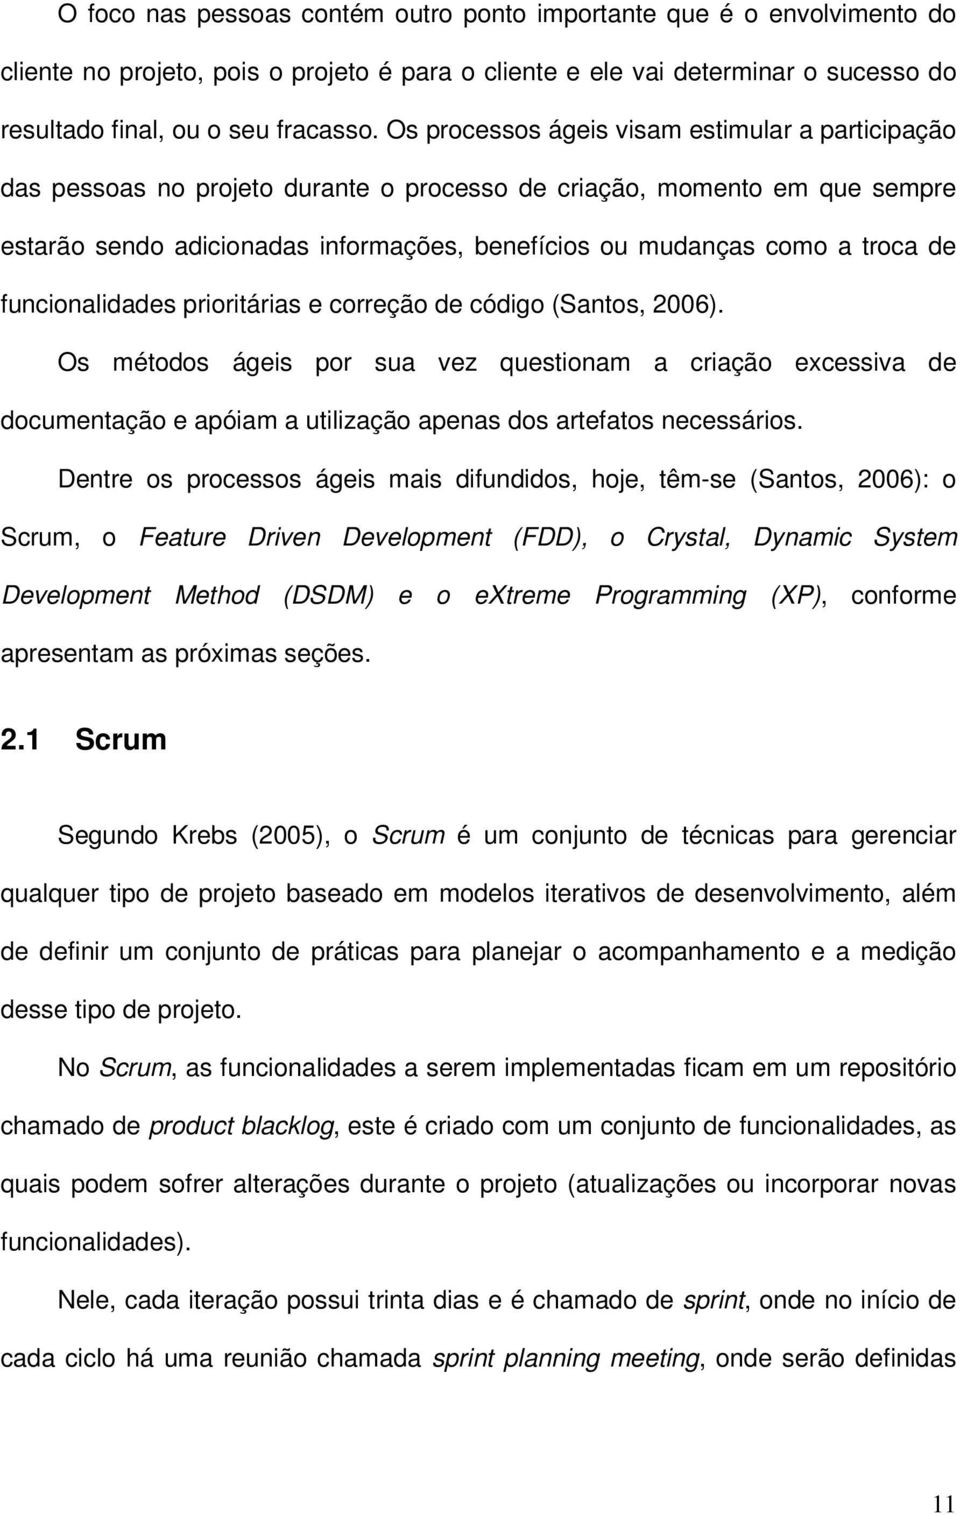 troca de funcionalidades prioritárias e correção de código (Santos, 2006).